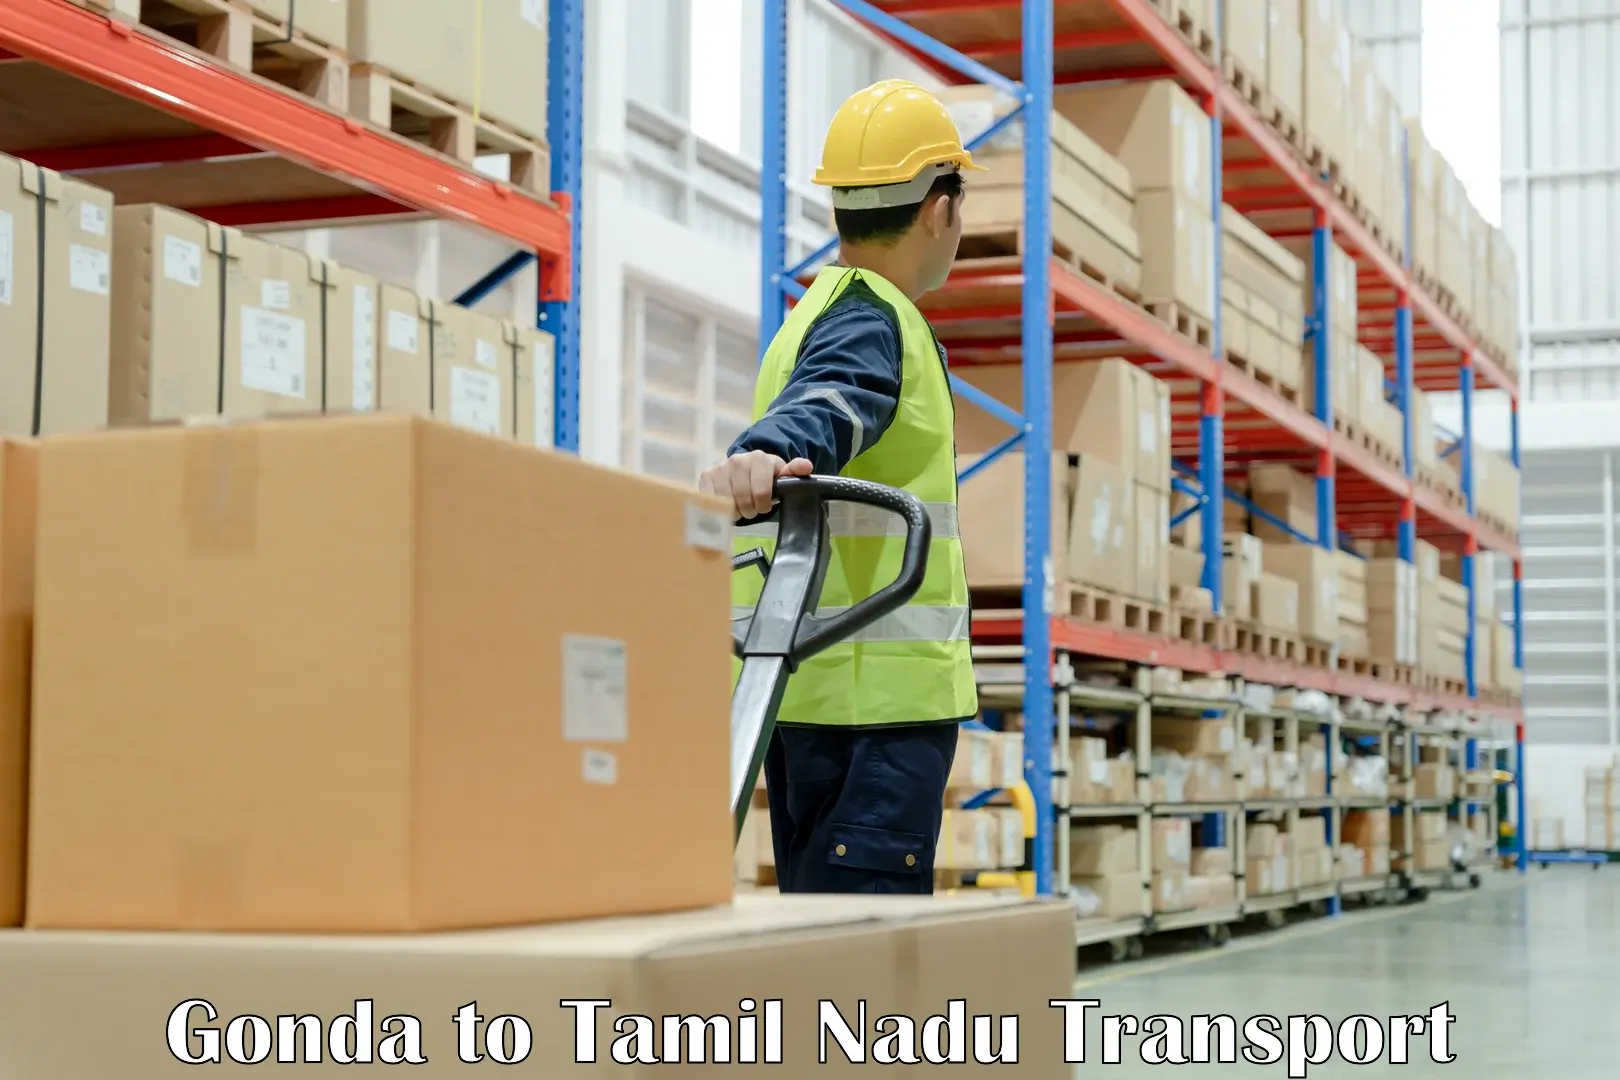 Road transport online services Gonda to Tamil Nadu